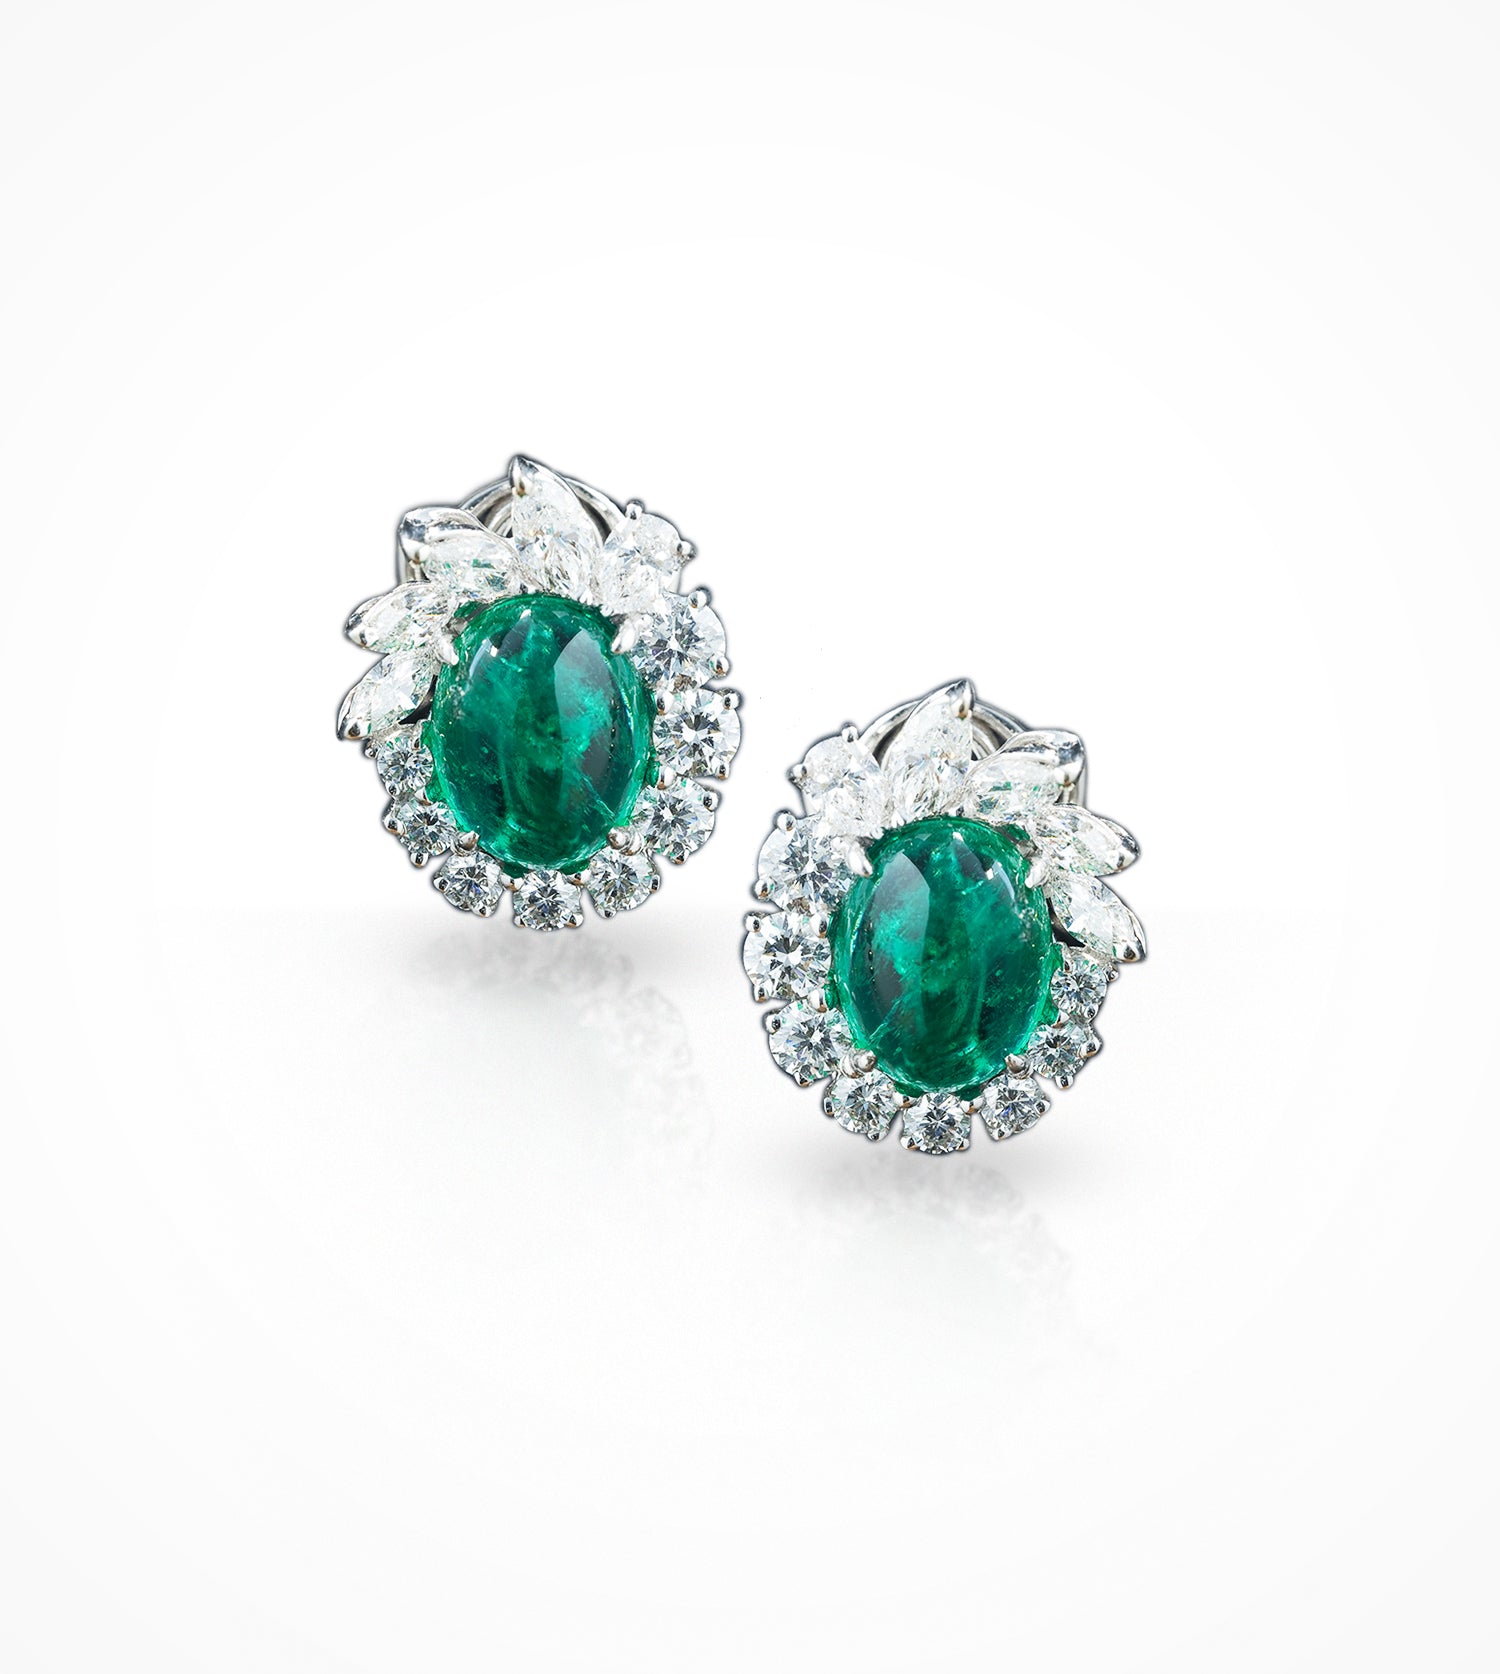 ER00569-18K white gold Emerald & diamond earrings - SOLD